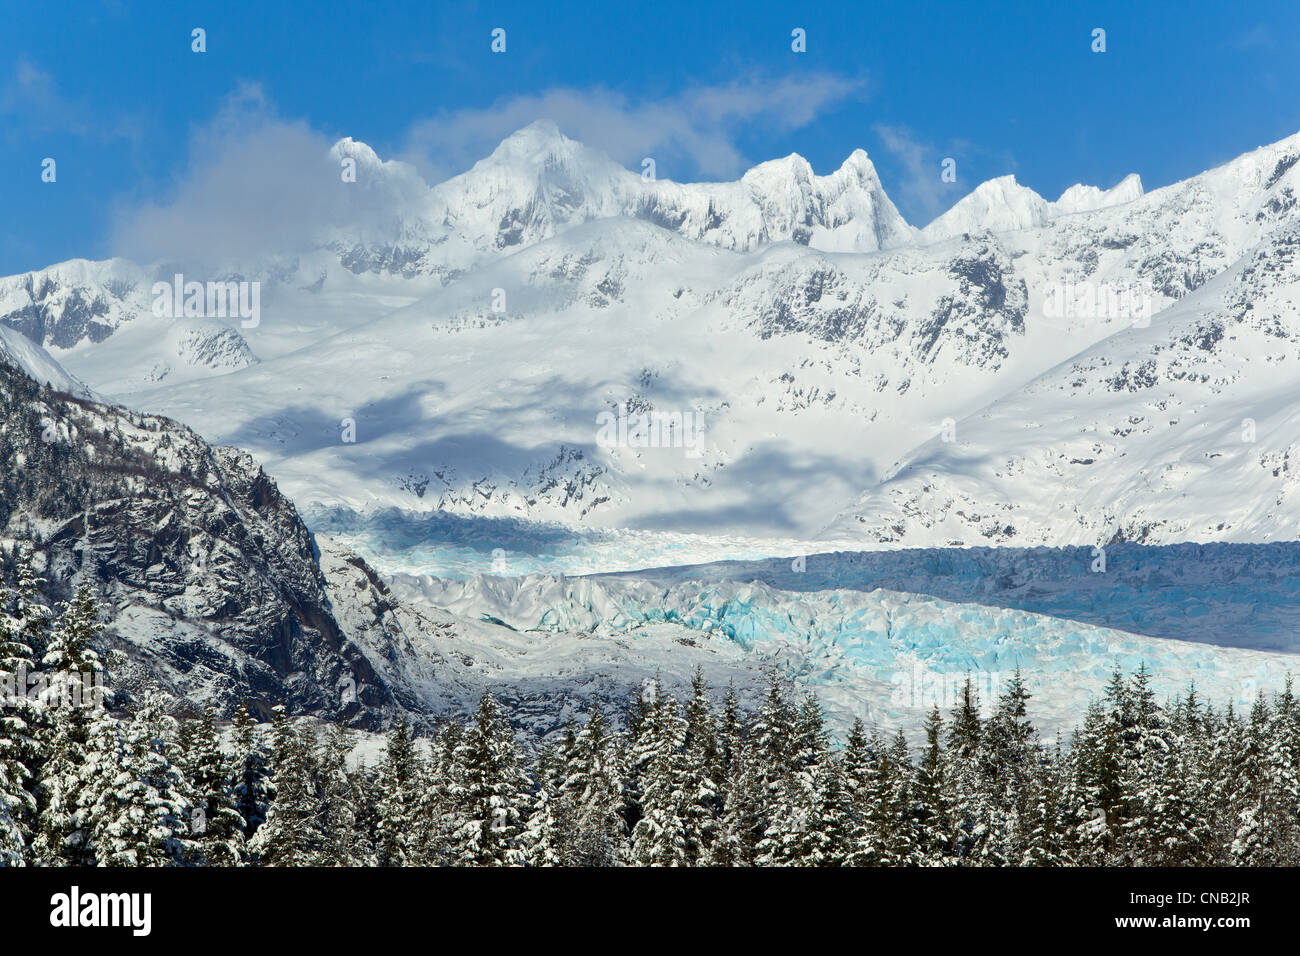 Paysage d'hiver panoramique de la rivière Mendenhall Glacier Mendenhall, et des tours, la Forêt Nationale Tongass, sud-est de l'Alaska Banque D'Images